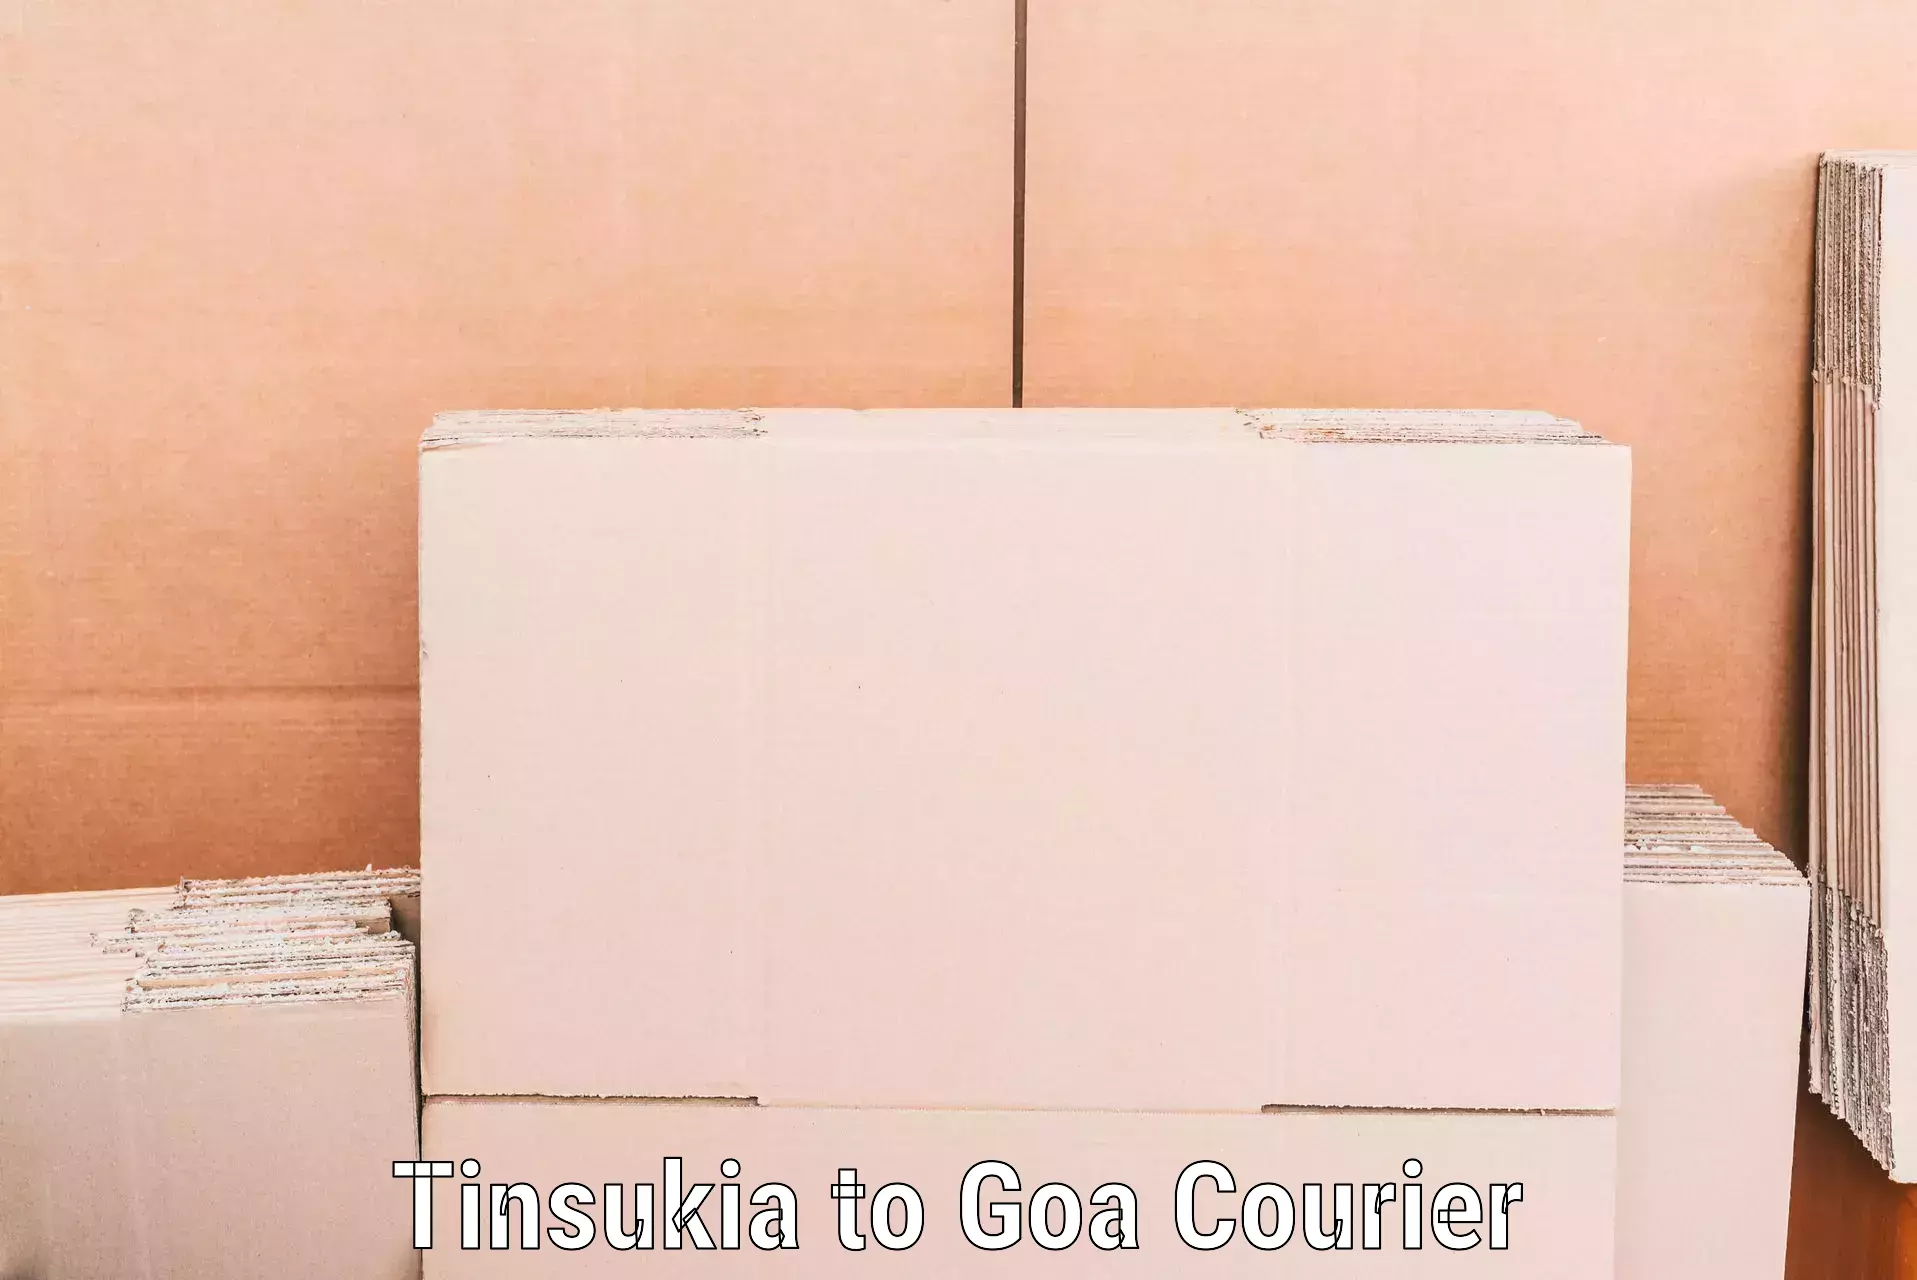 Home shifting experts Tinsukia to Goa